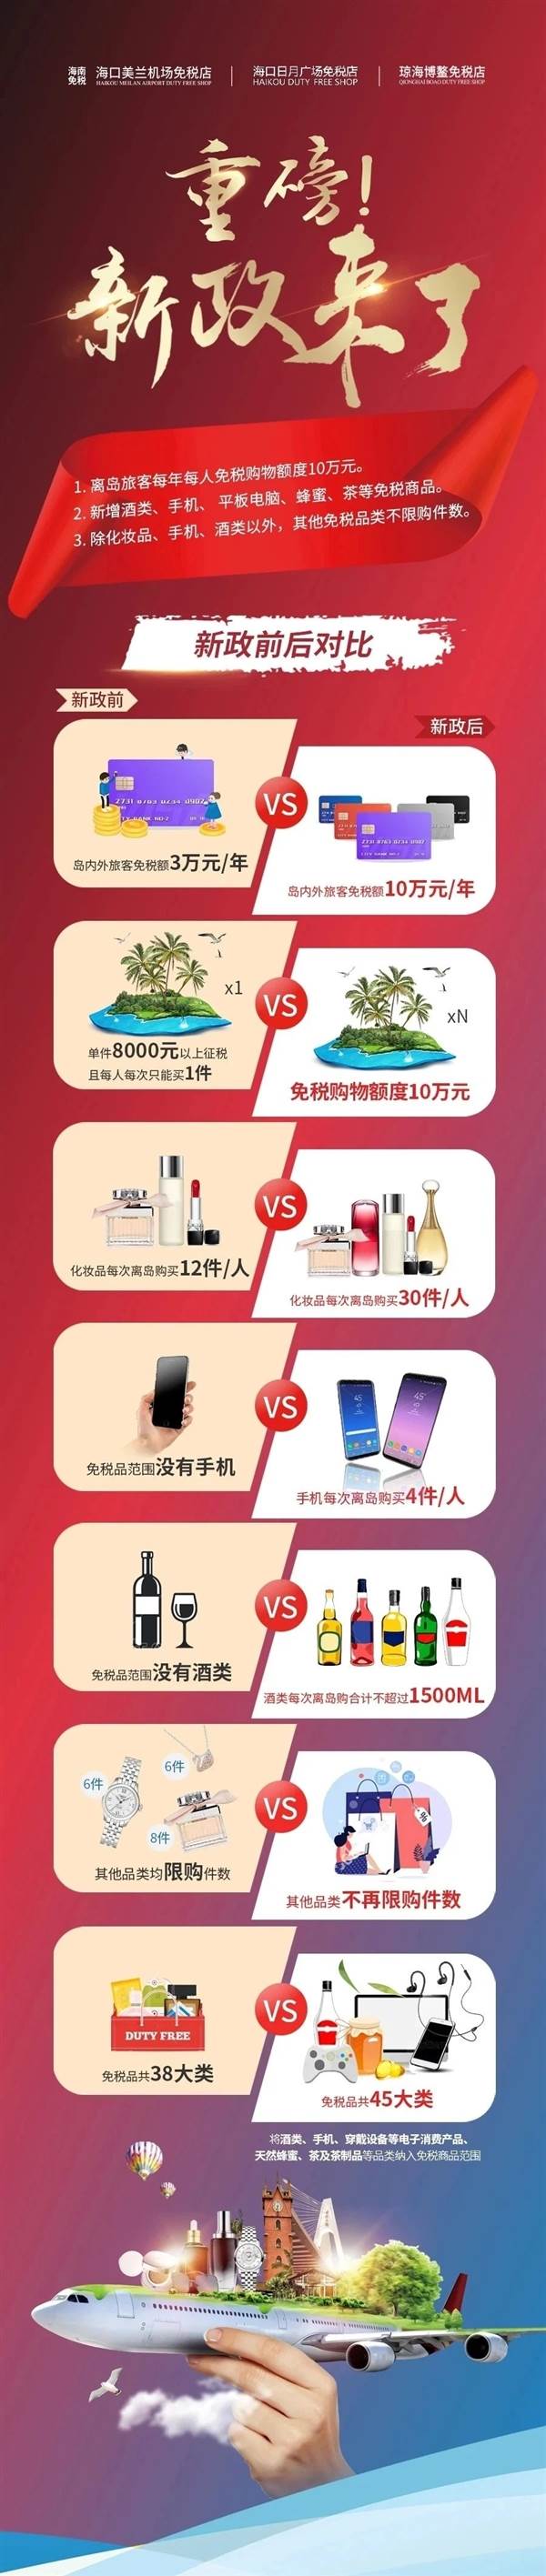 琼版iPhone免13%税、比港版便宜 网友：要去海南买手机了